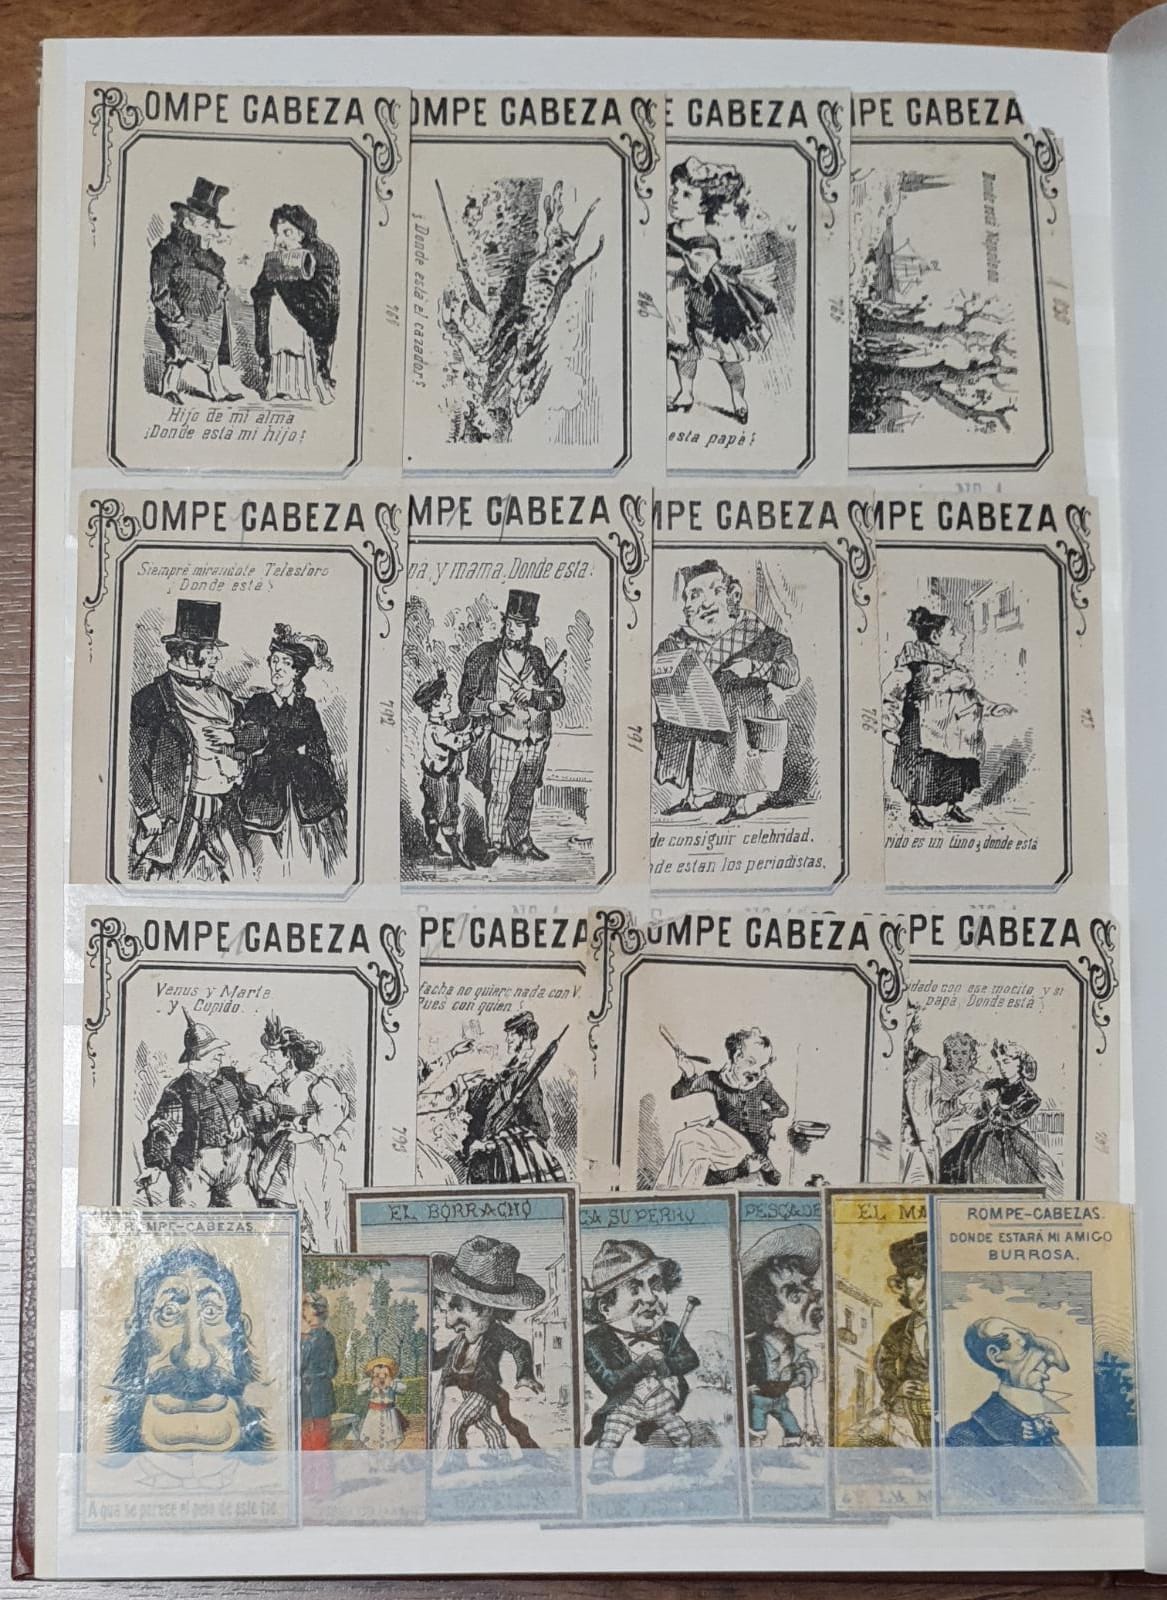 Álbum con más de 700 fototipias de cajas de cerillas del Siglo XIX. INTERESANTE